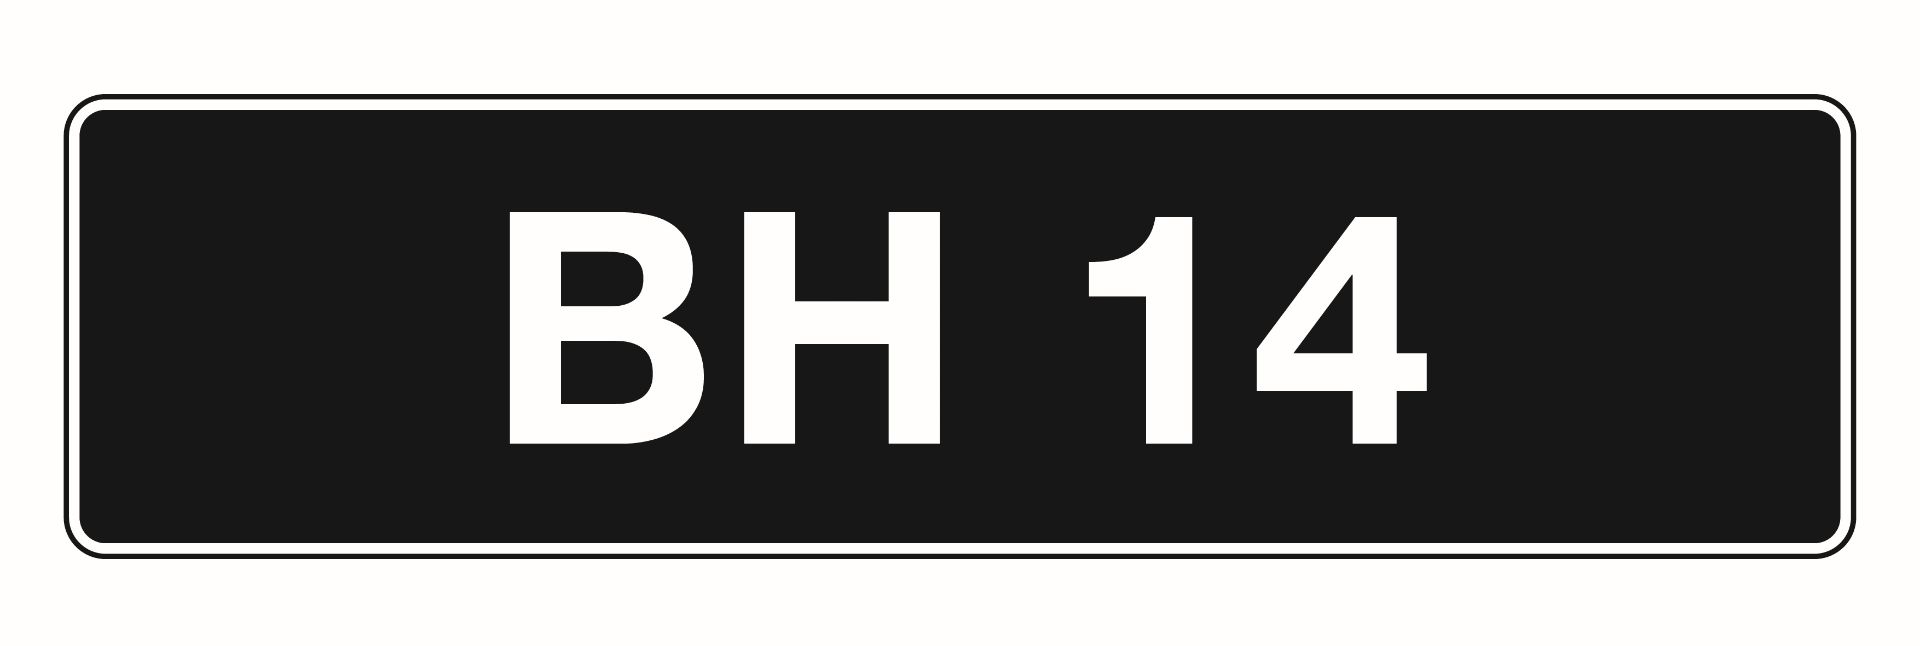 'BH 14' - UK Vehicle Registration Number,